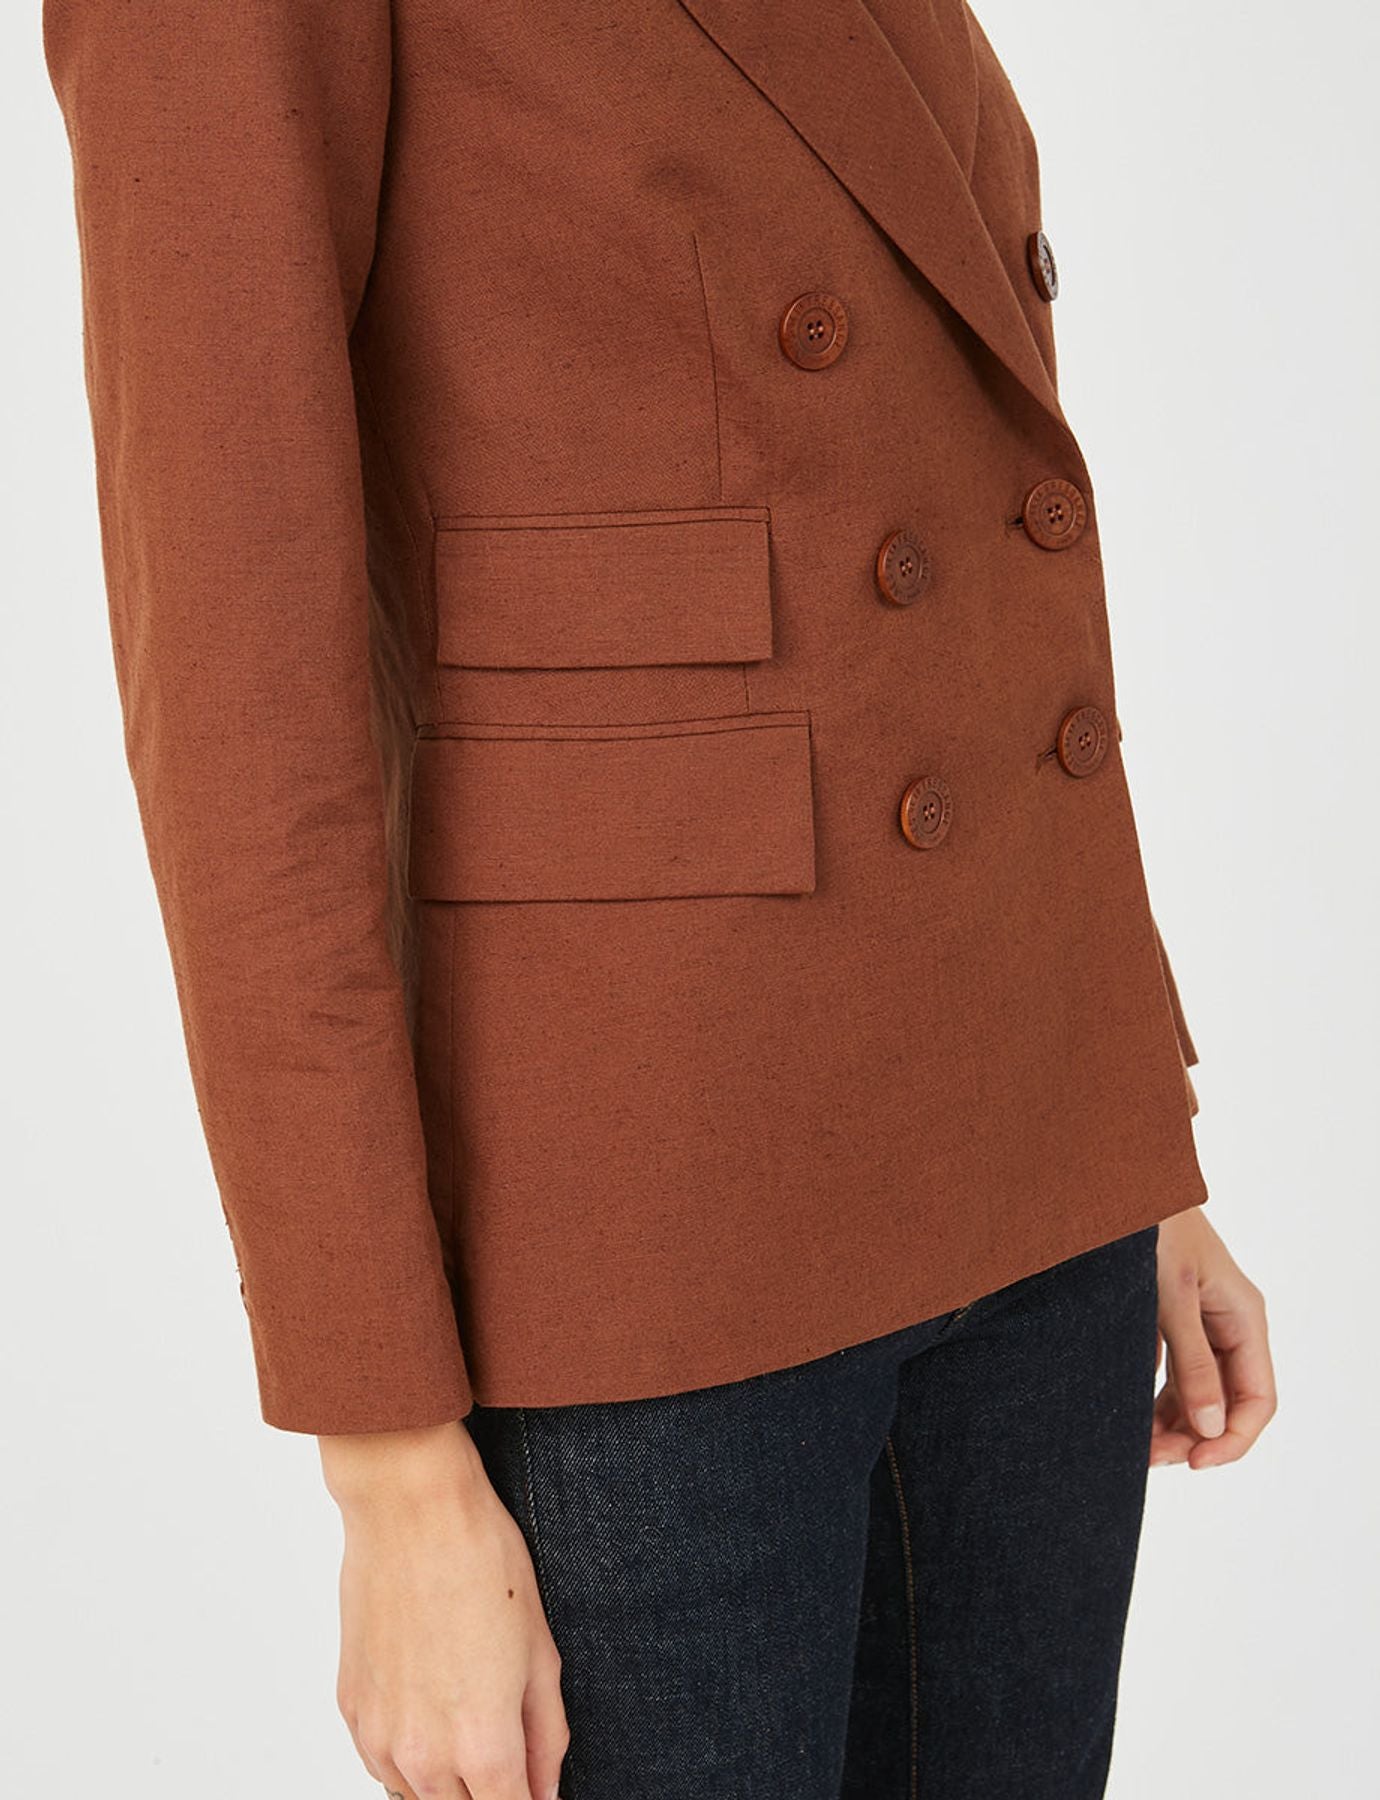 jacket-brown